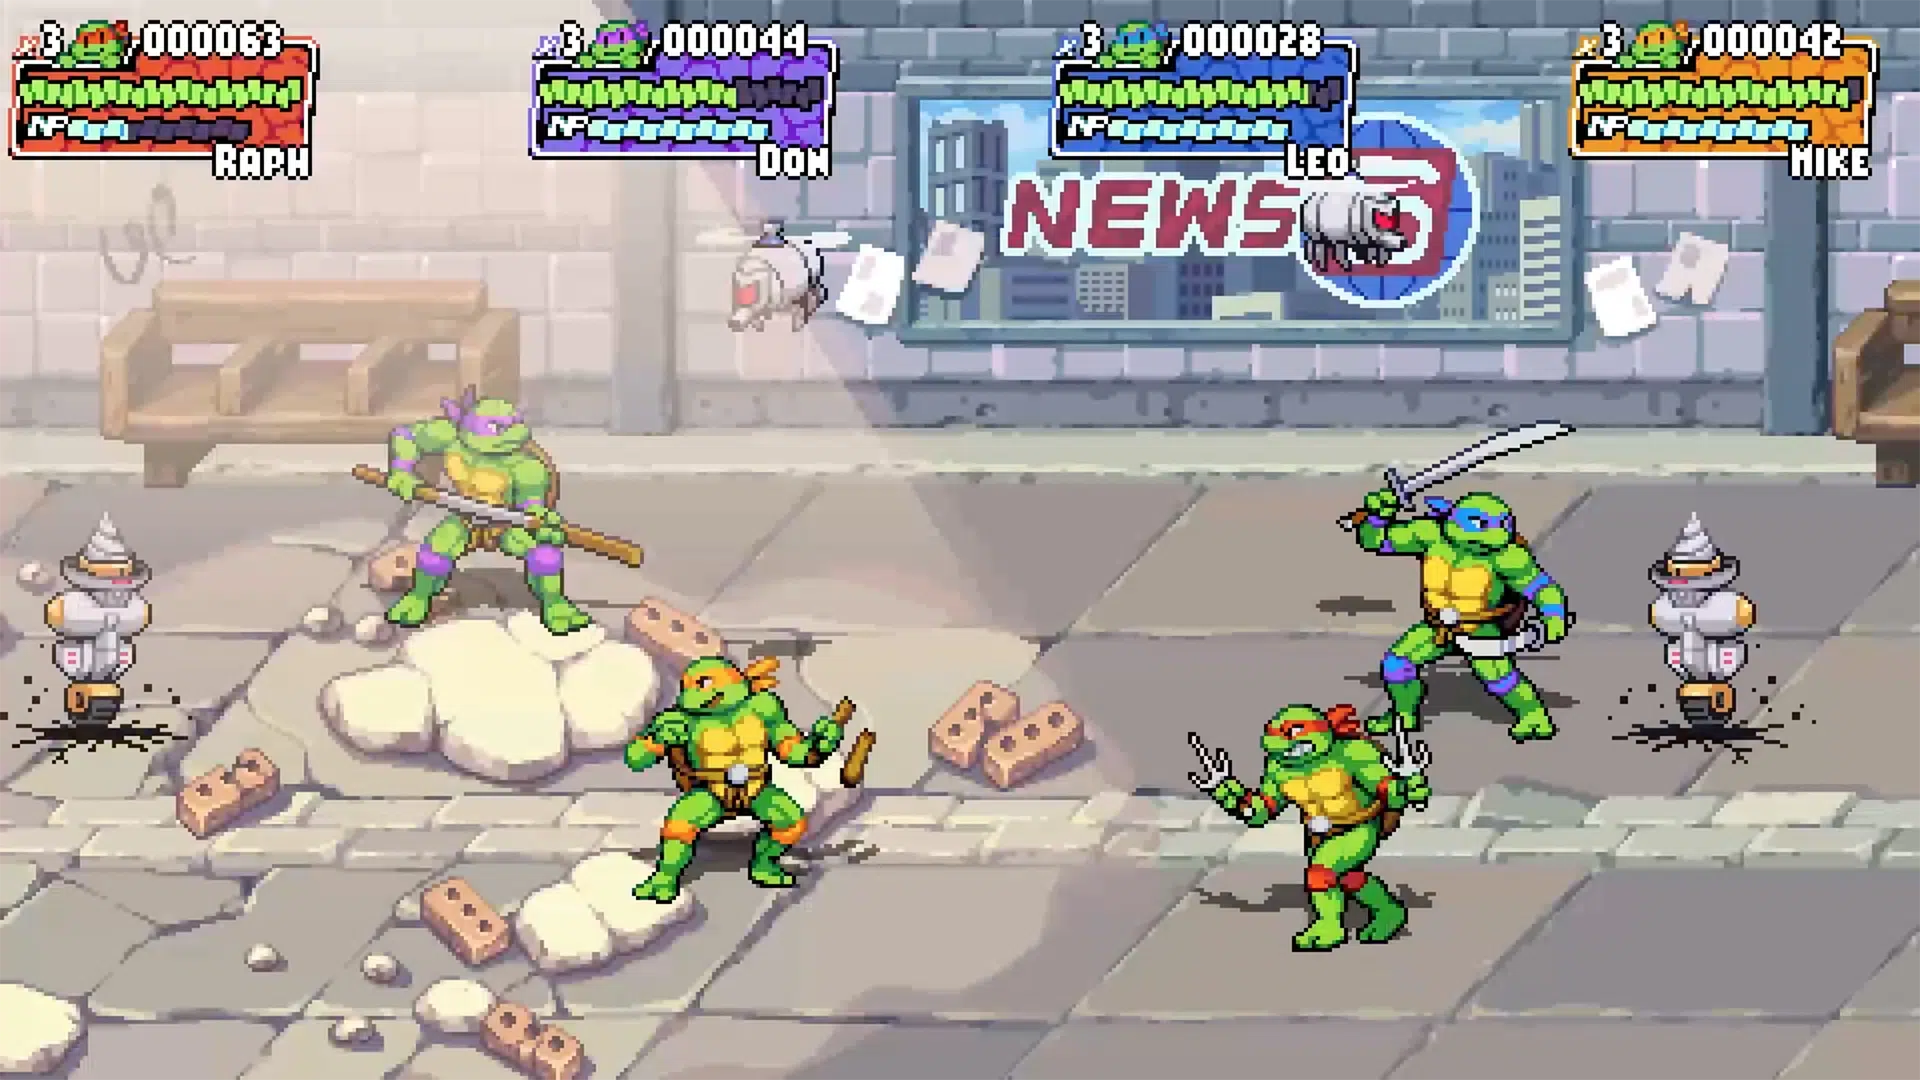 Teenage Mutant Ninja Turtles: Shredder’s Revenge PS4